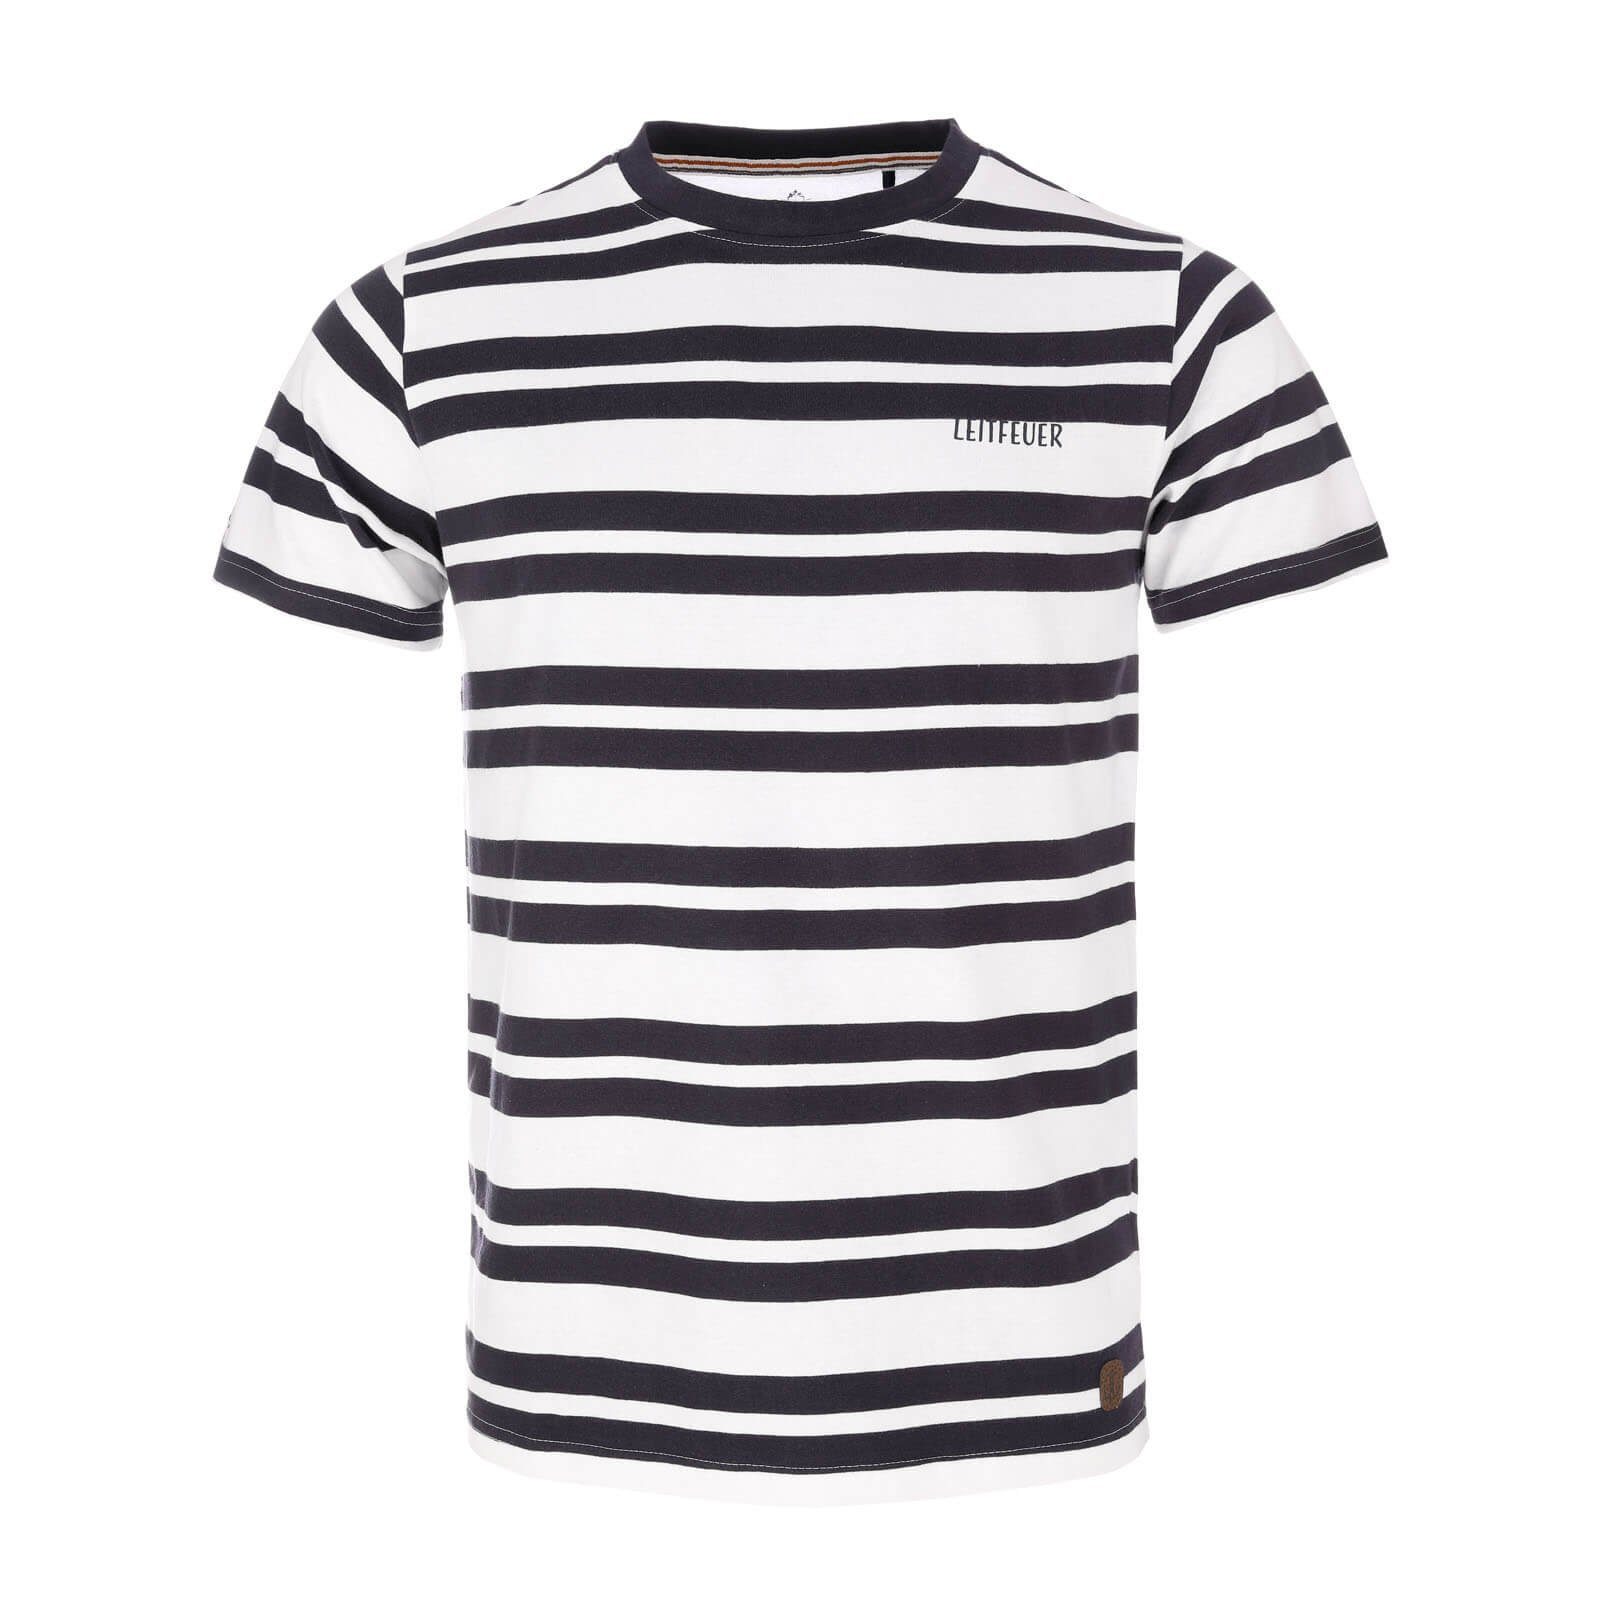 Leitfeuer T-Shirt Herren Sommershirt mit Allover-Streifen - Kurzarm-Shirt mit Rundhals dark navy / white